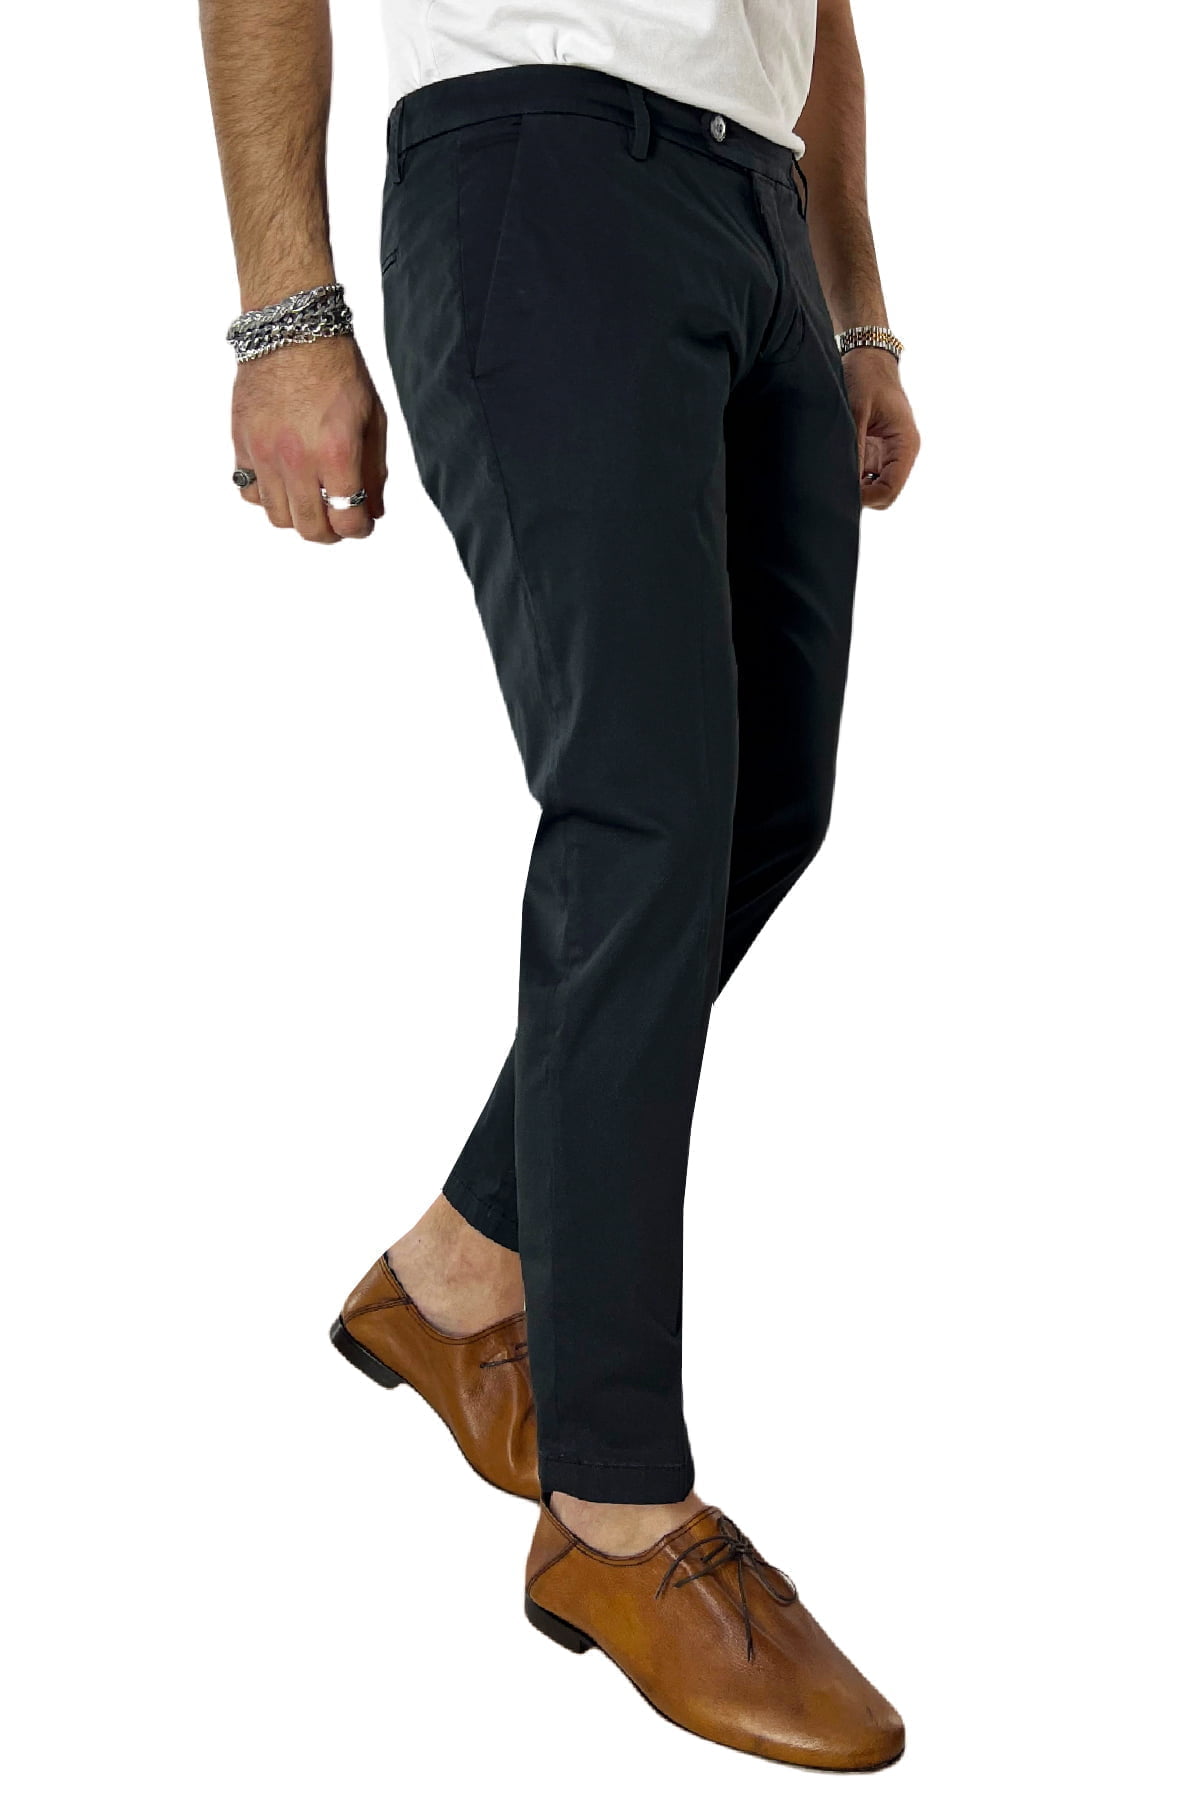 Pantalone uomo nero in Cotone tasca america leggermente elastico estivo